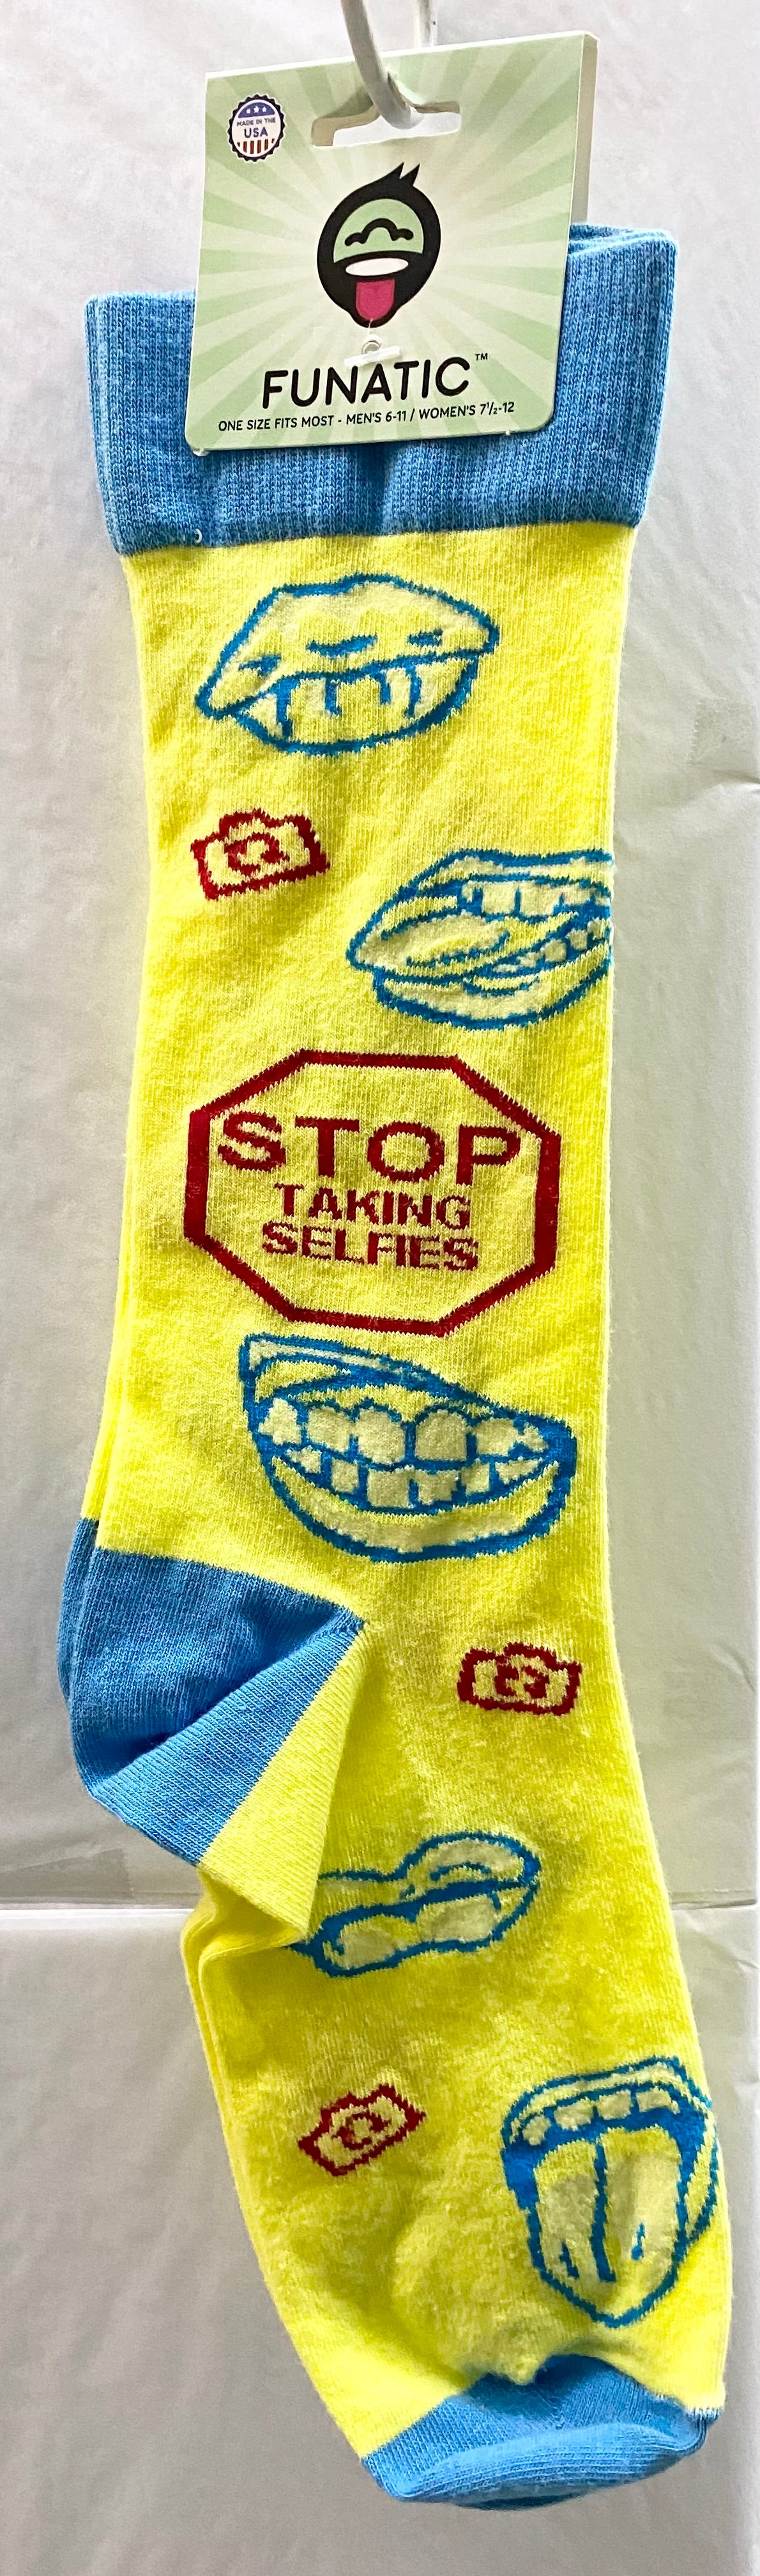 Stop Taking Selfies Socks